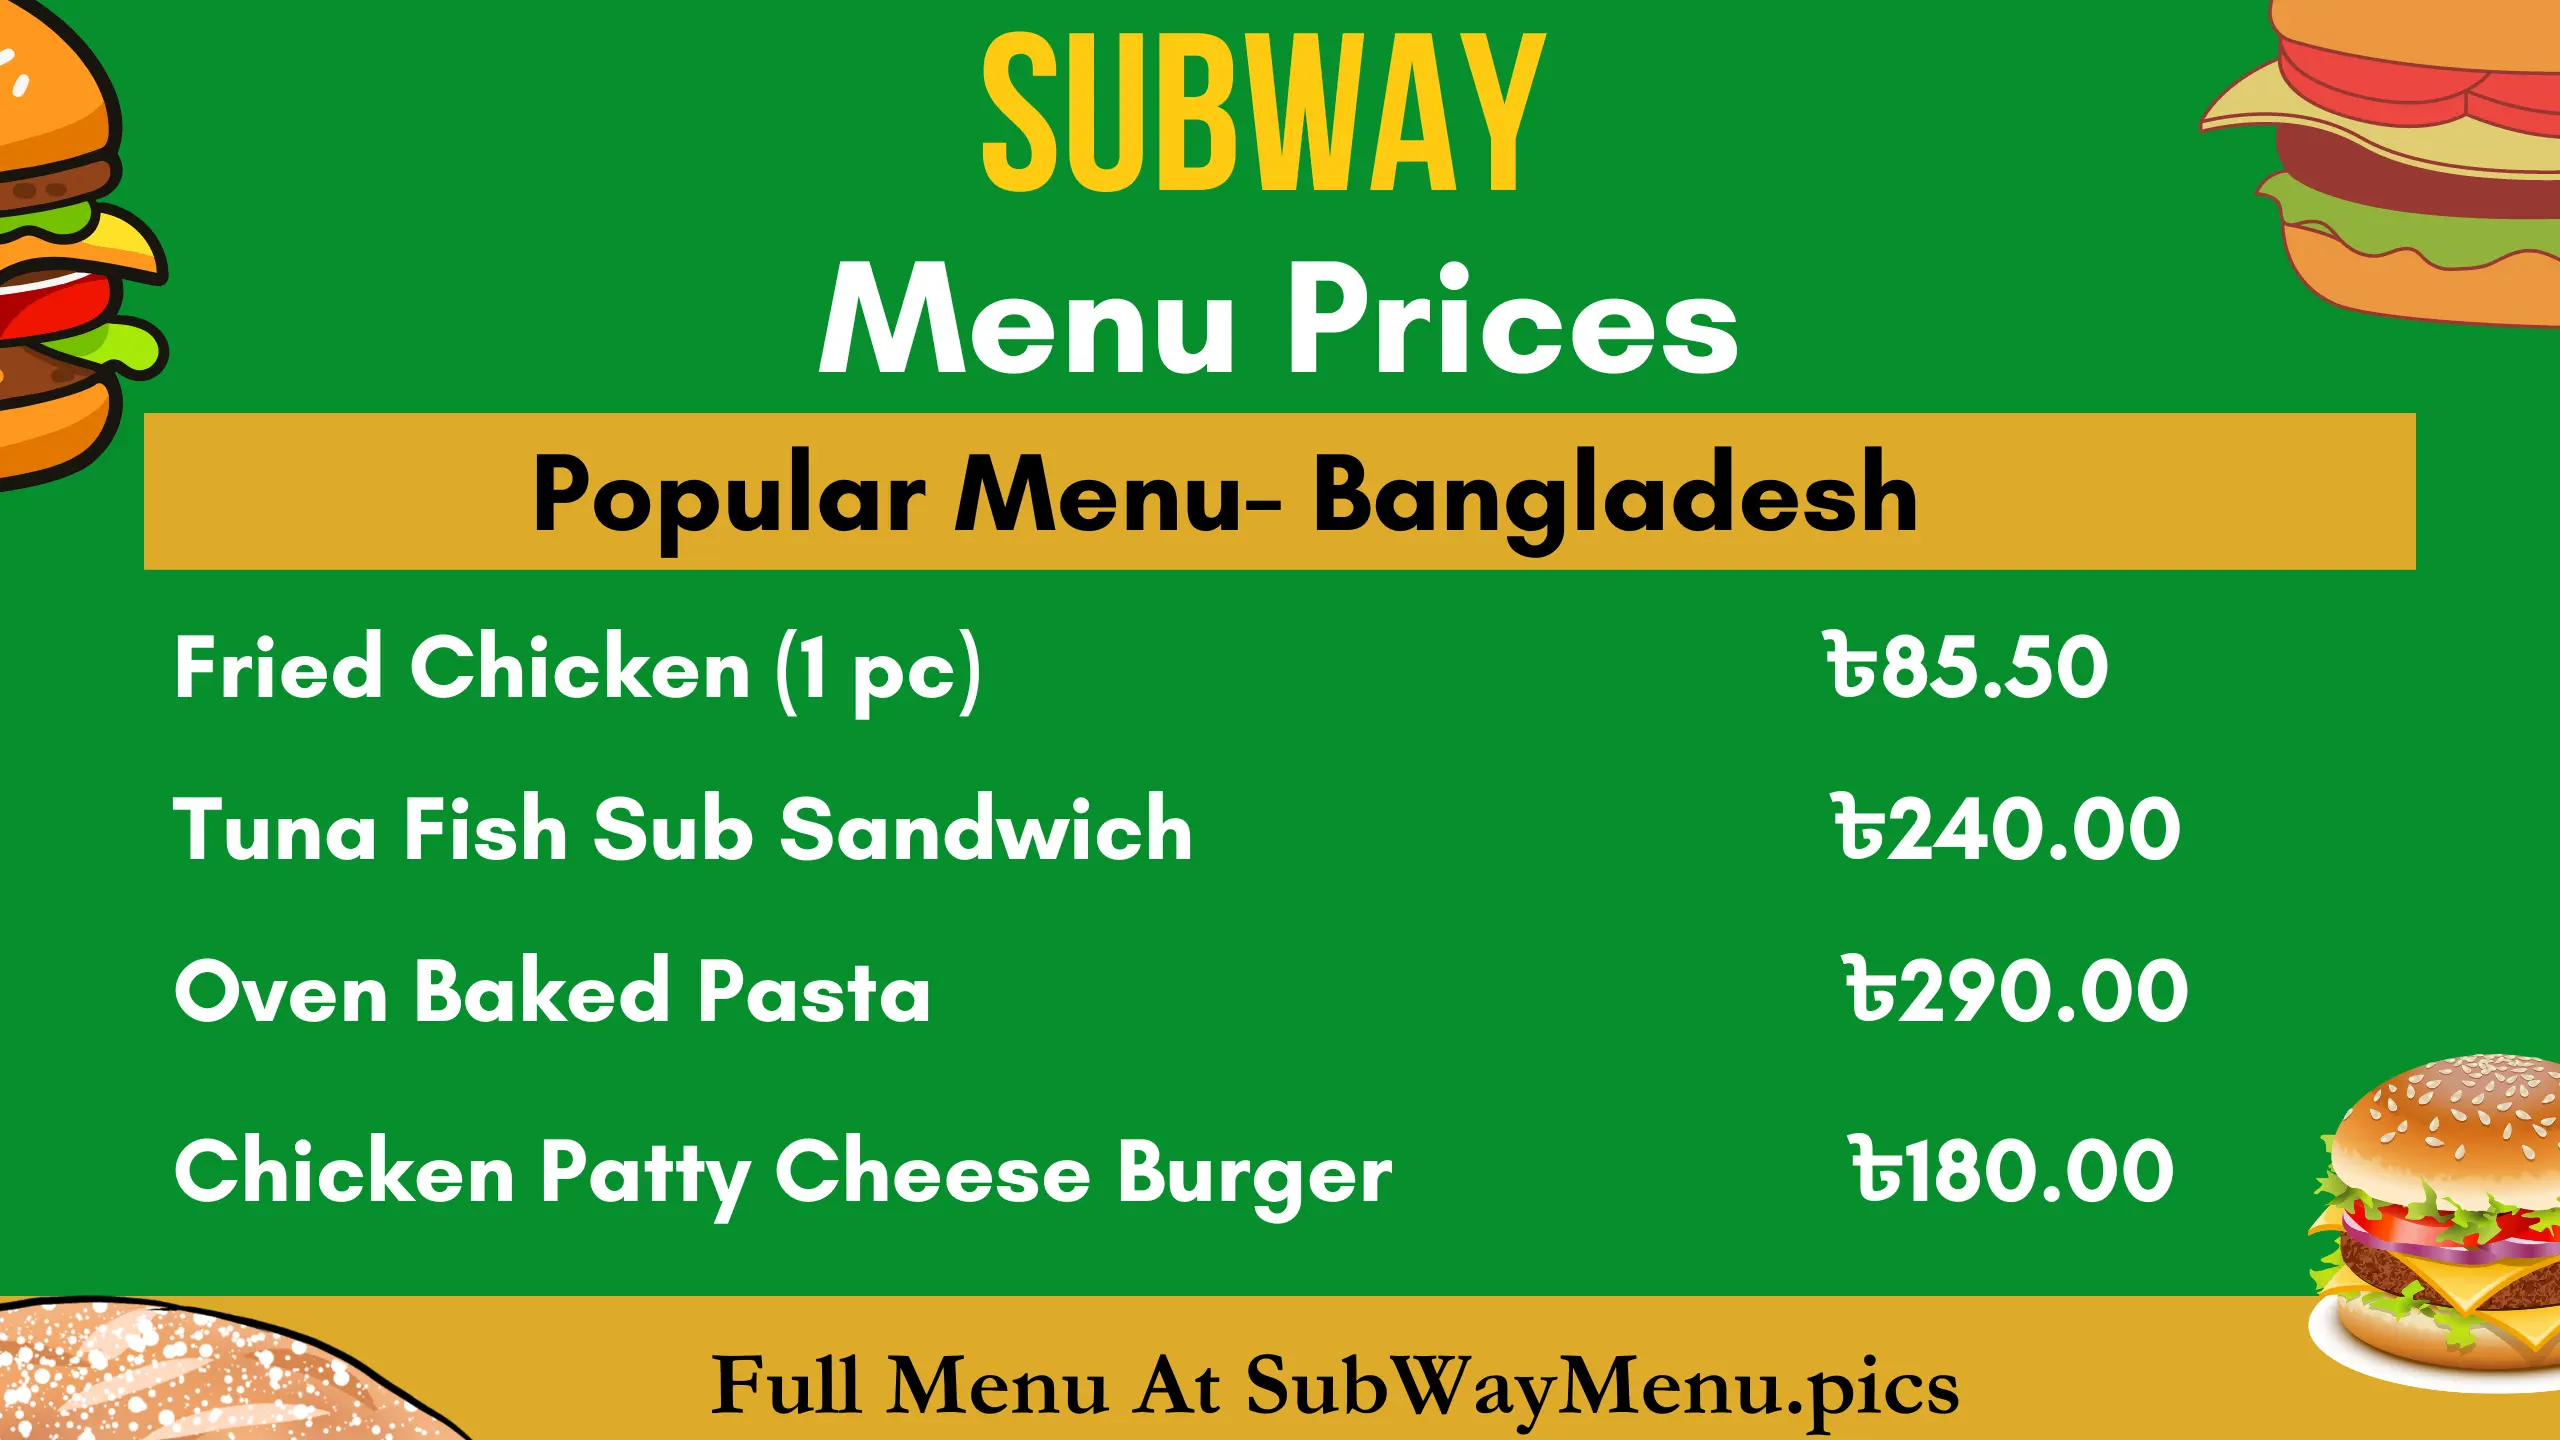 Subway Menu Prices (Bangladesh)